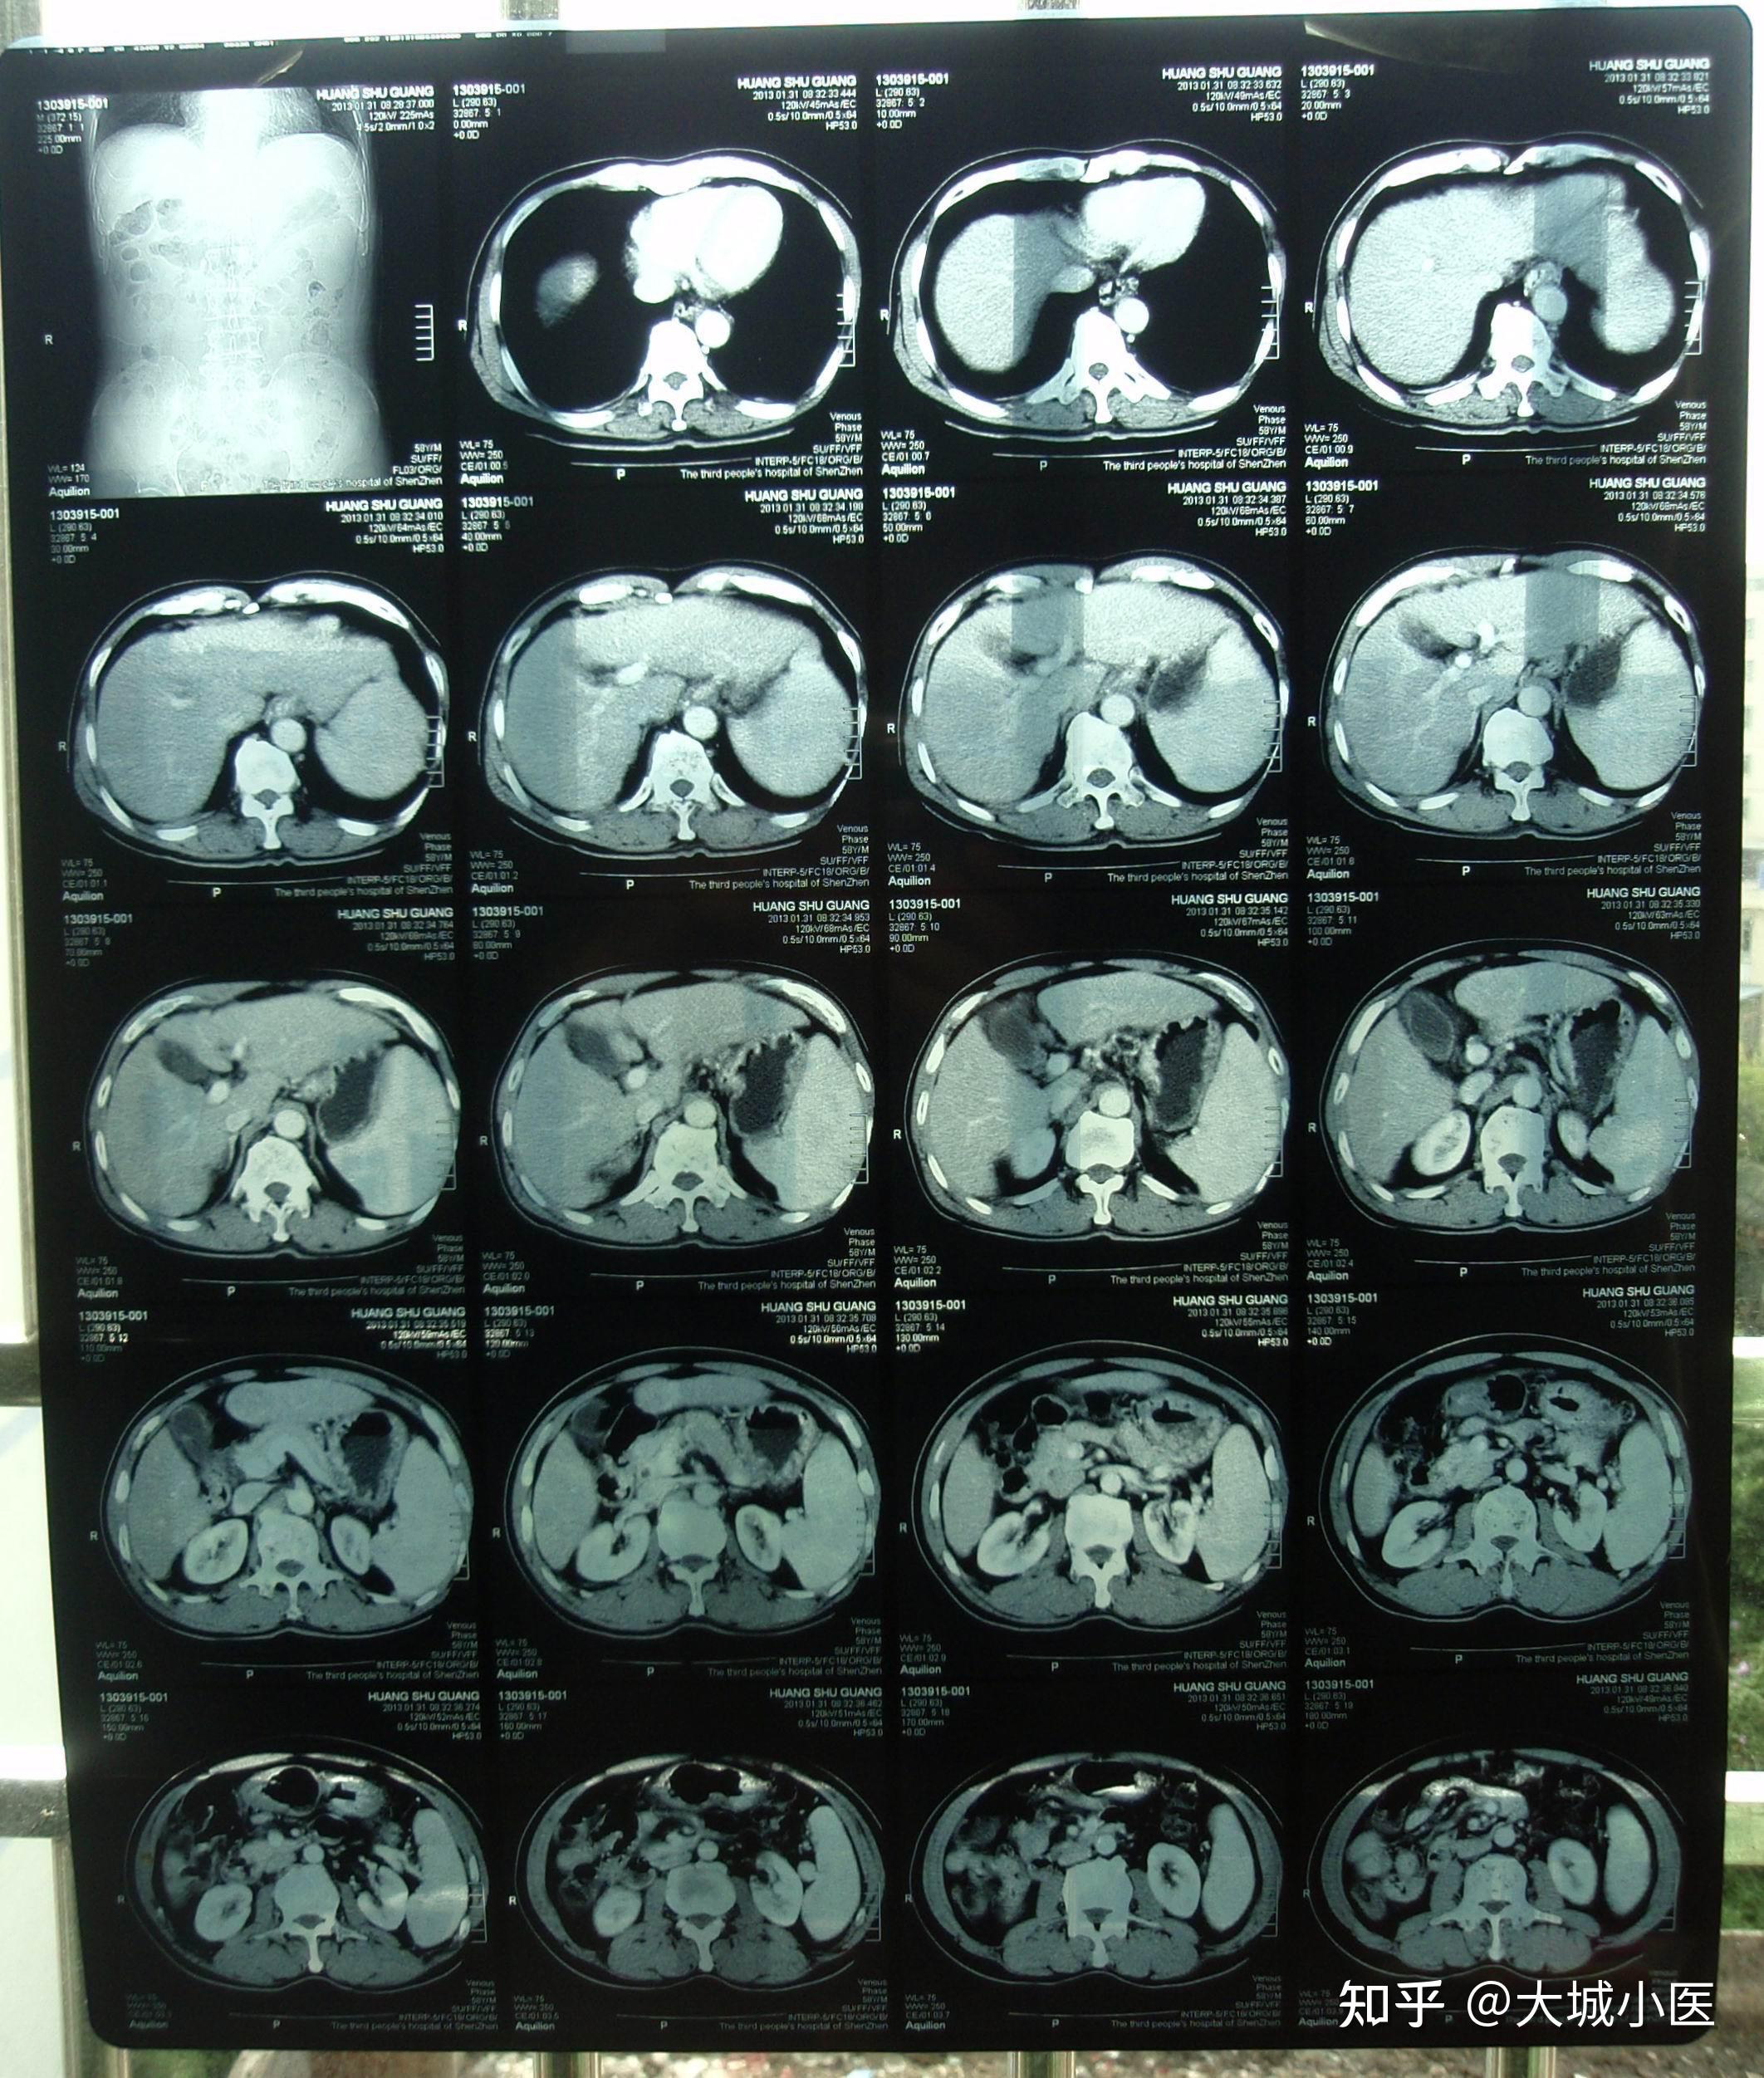 肝尾状叶CT图片